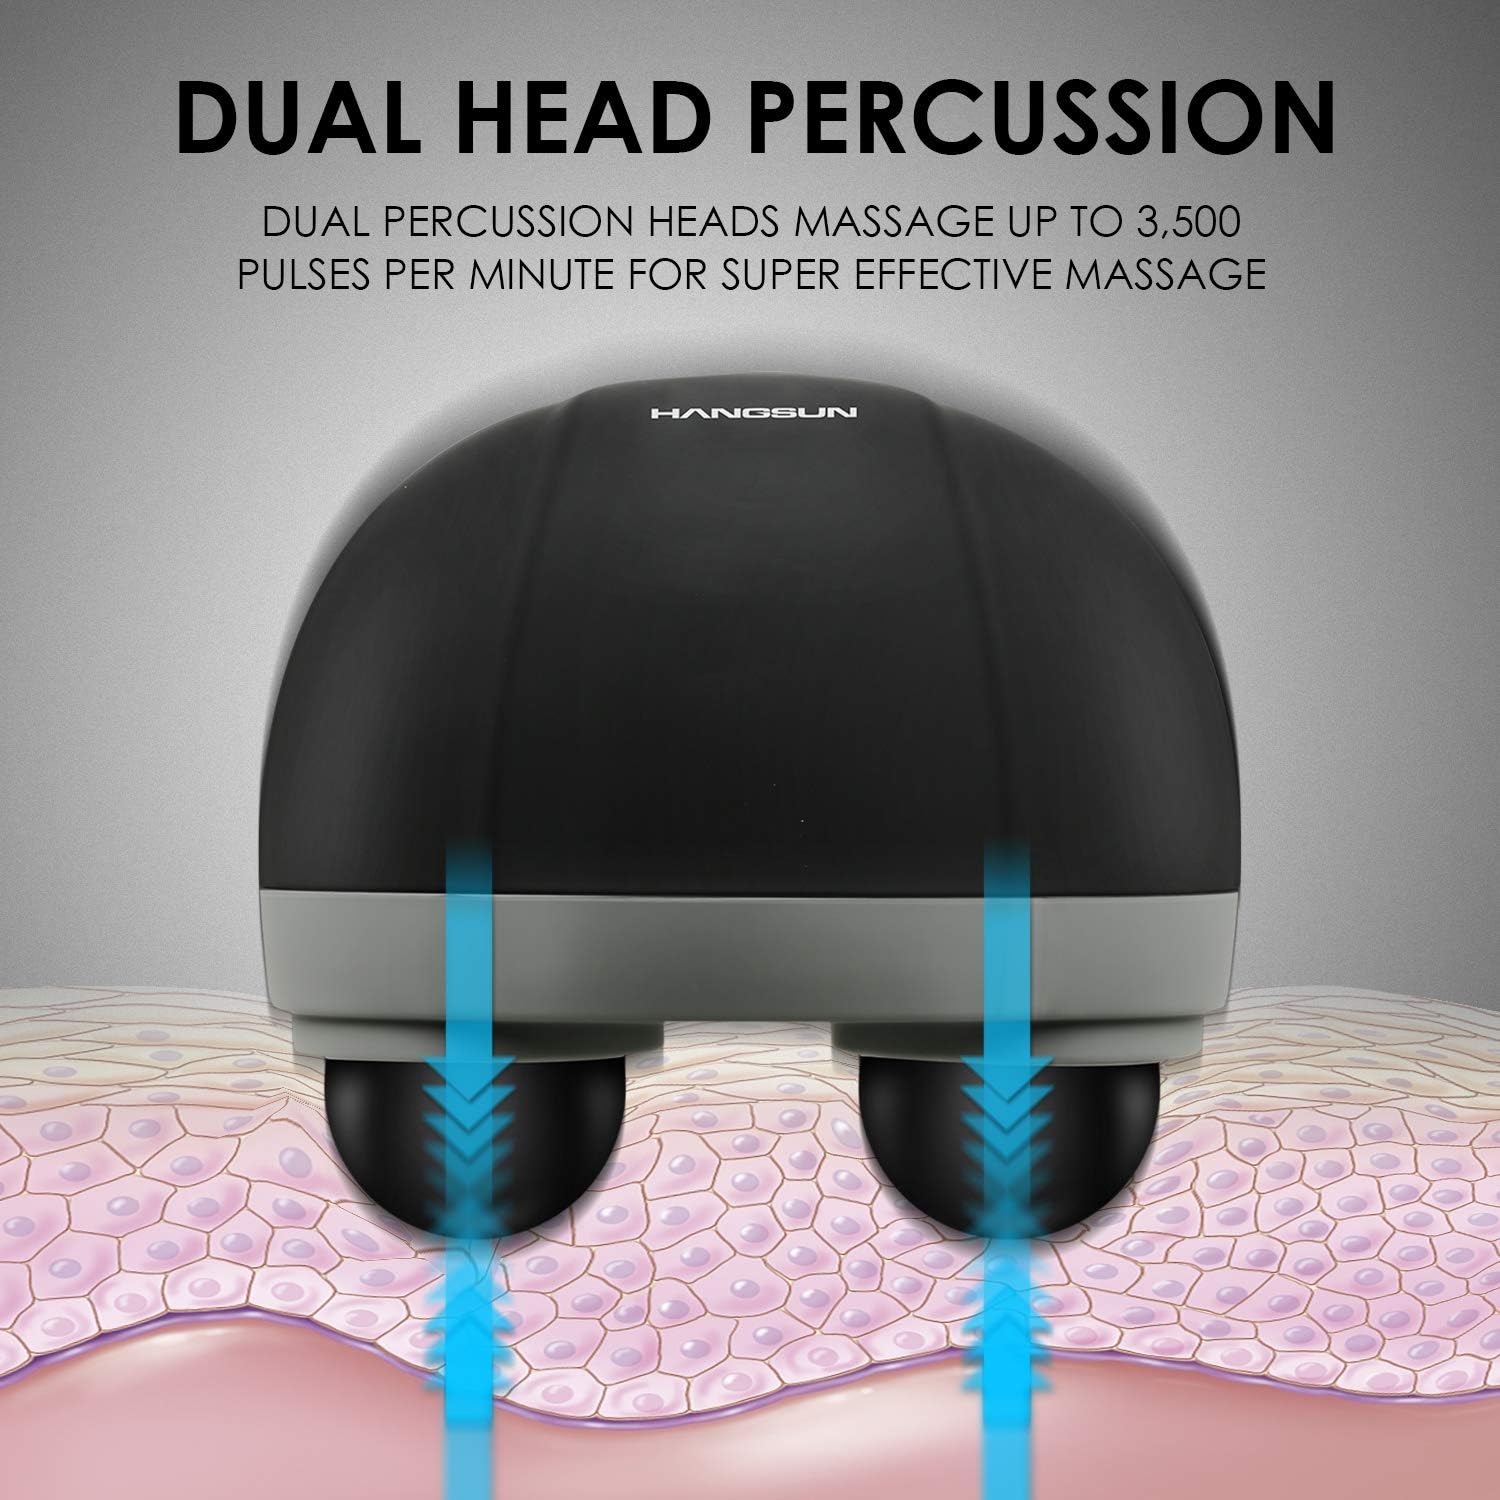 Hangsun Handheld Neck Back Massager Mg400 Deep Tissue Percussion Massage Review Massage Gear Hub 6816